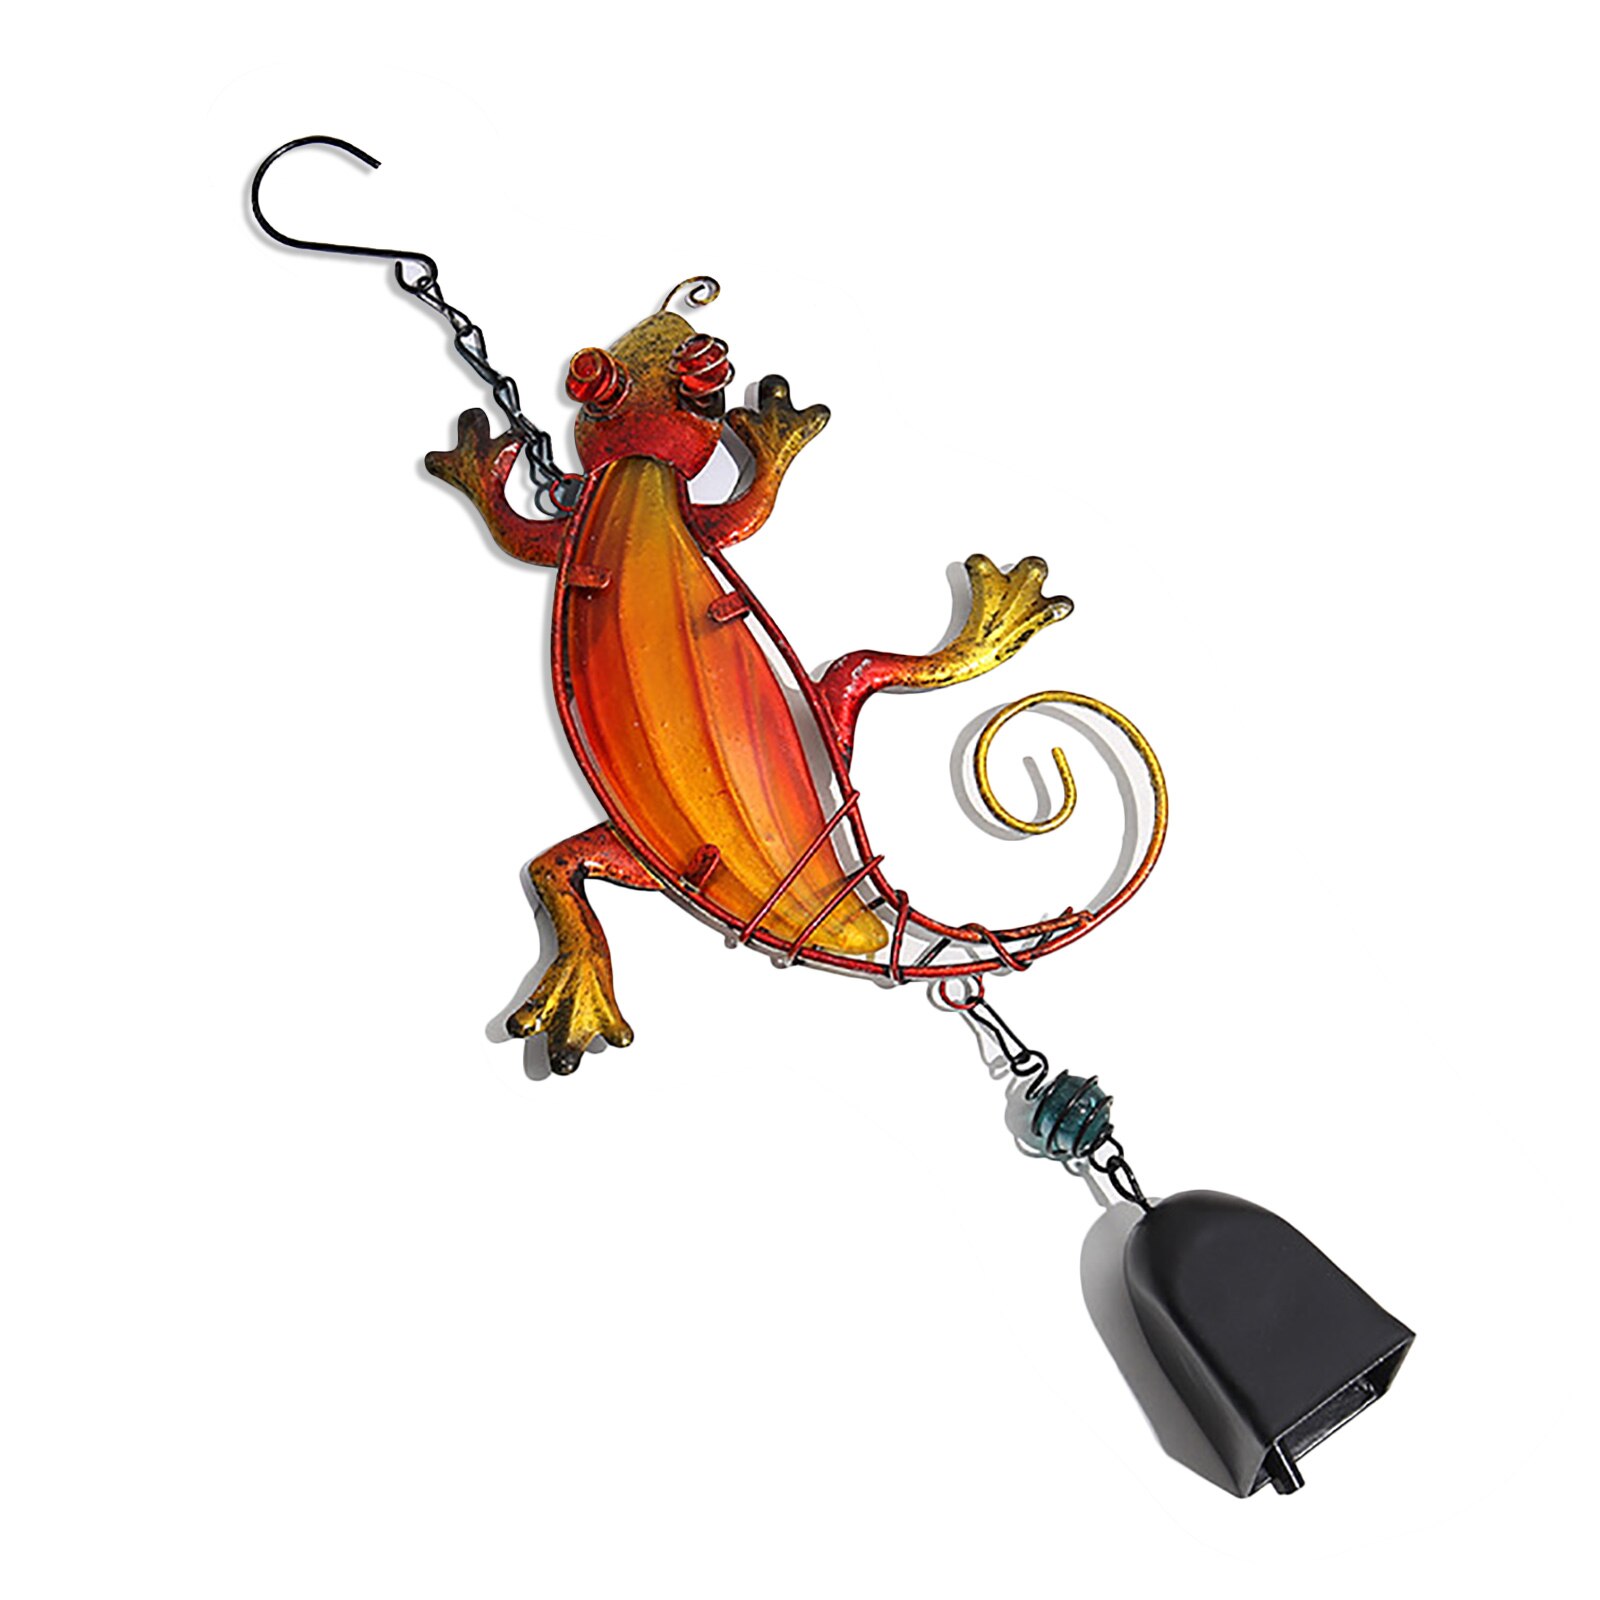 Vindklokke glas gekko gecko hængende vindklokke ornamenter håndværk med krog håndmalet orange rød altan dekorationer